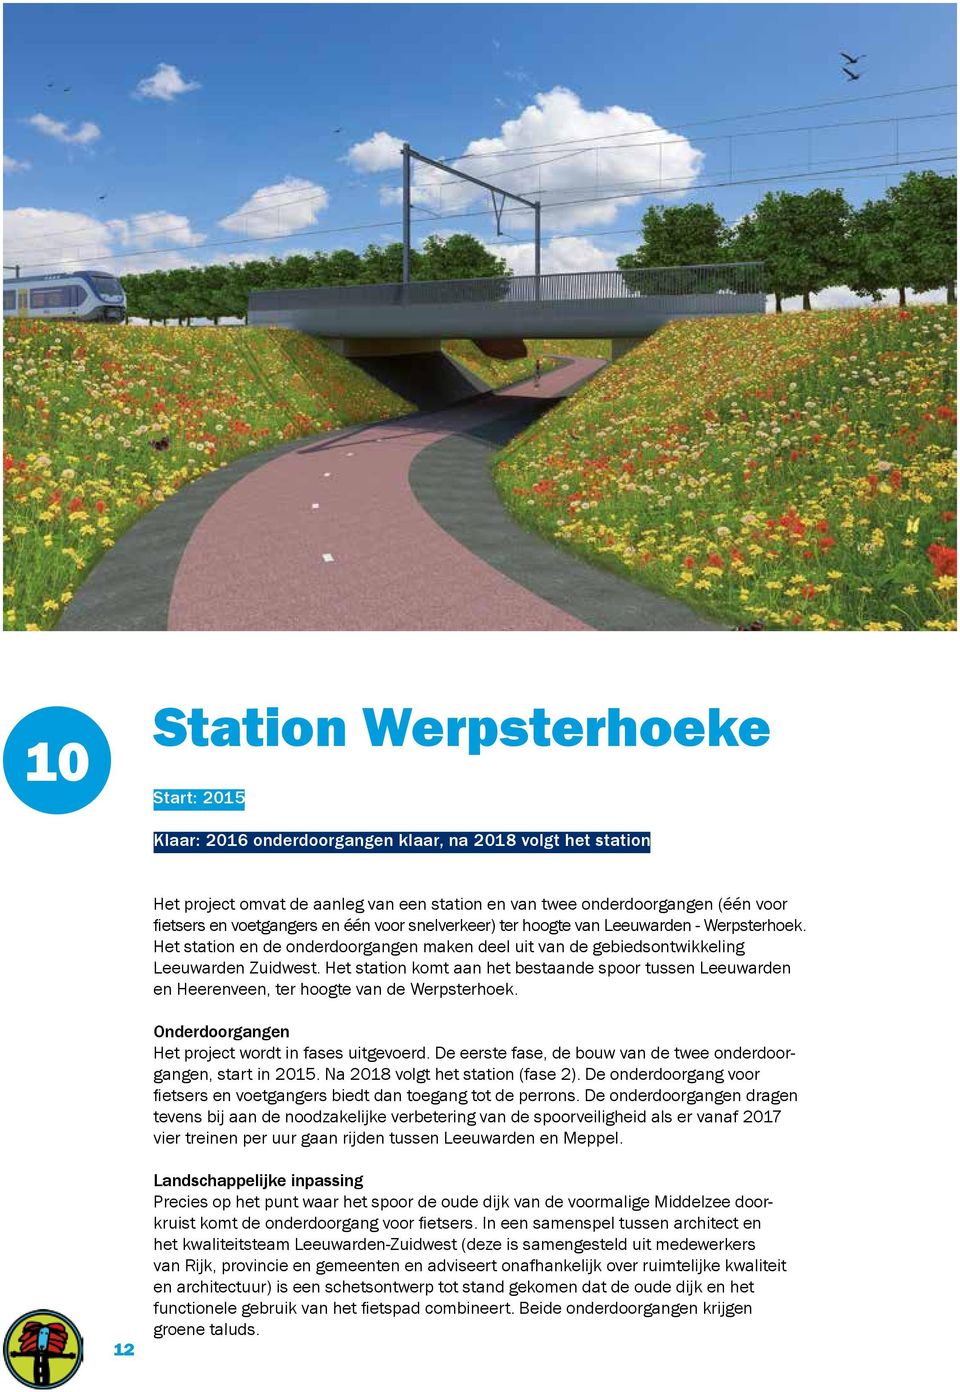 Het station komt aan het bestaande spoor tussen Leeuwarden en Heerenveen, ter hoogte van de Werpsterhoek. Onderdoorgangen Het project wordt in fases uitgevoerd.